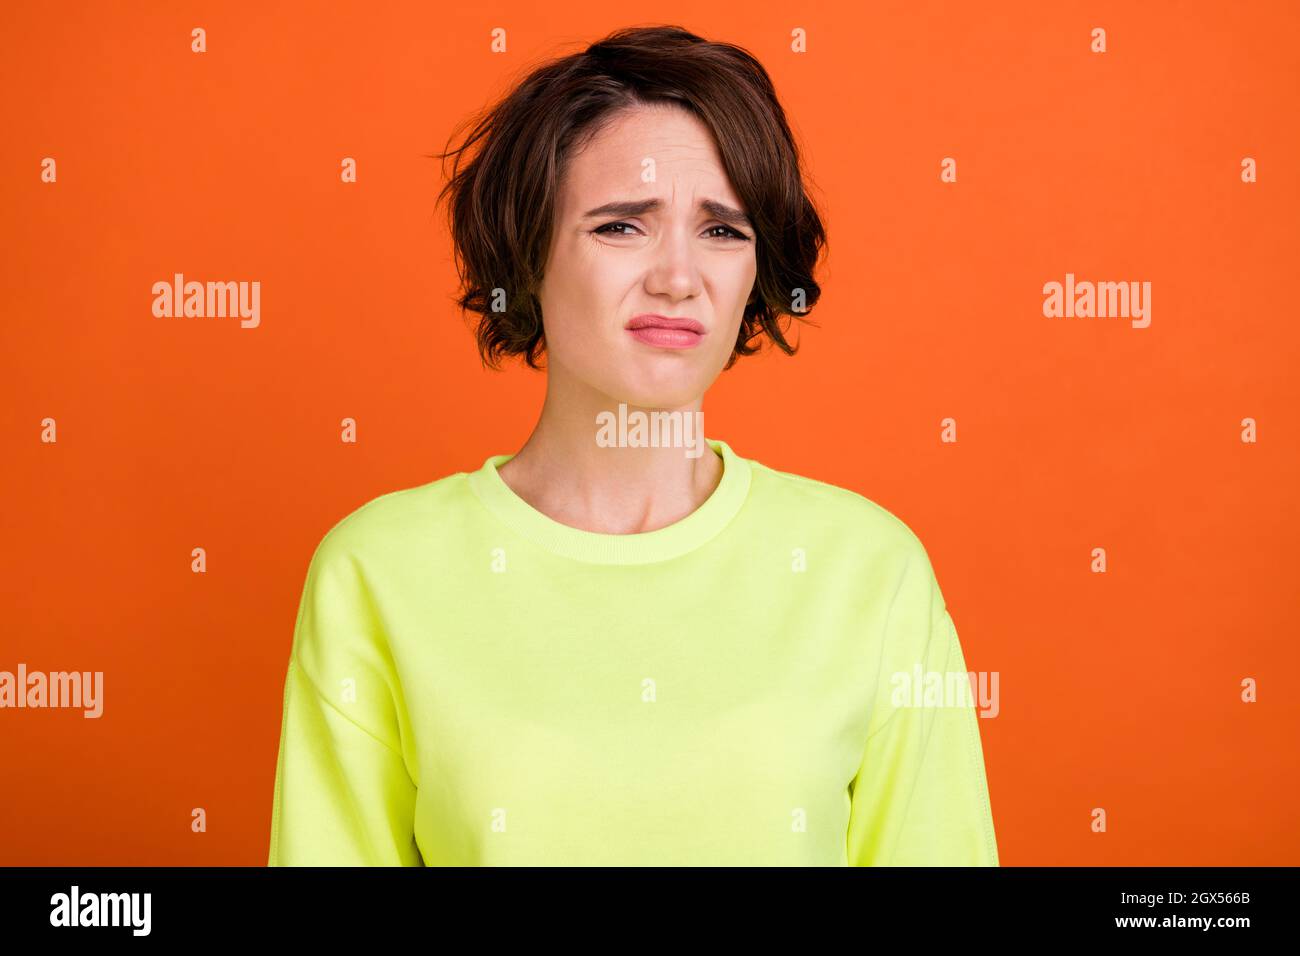 Foto von jungen braunen bob behaart unglücklich gestresst Frau schlechte Stimmung Grimasse isoliert auf orangen Hintergrund Stockfoto